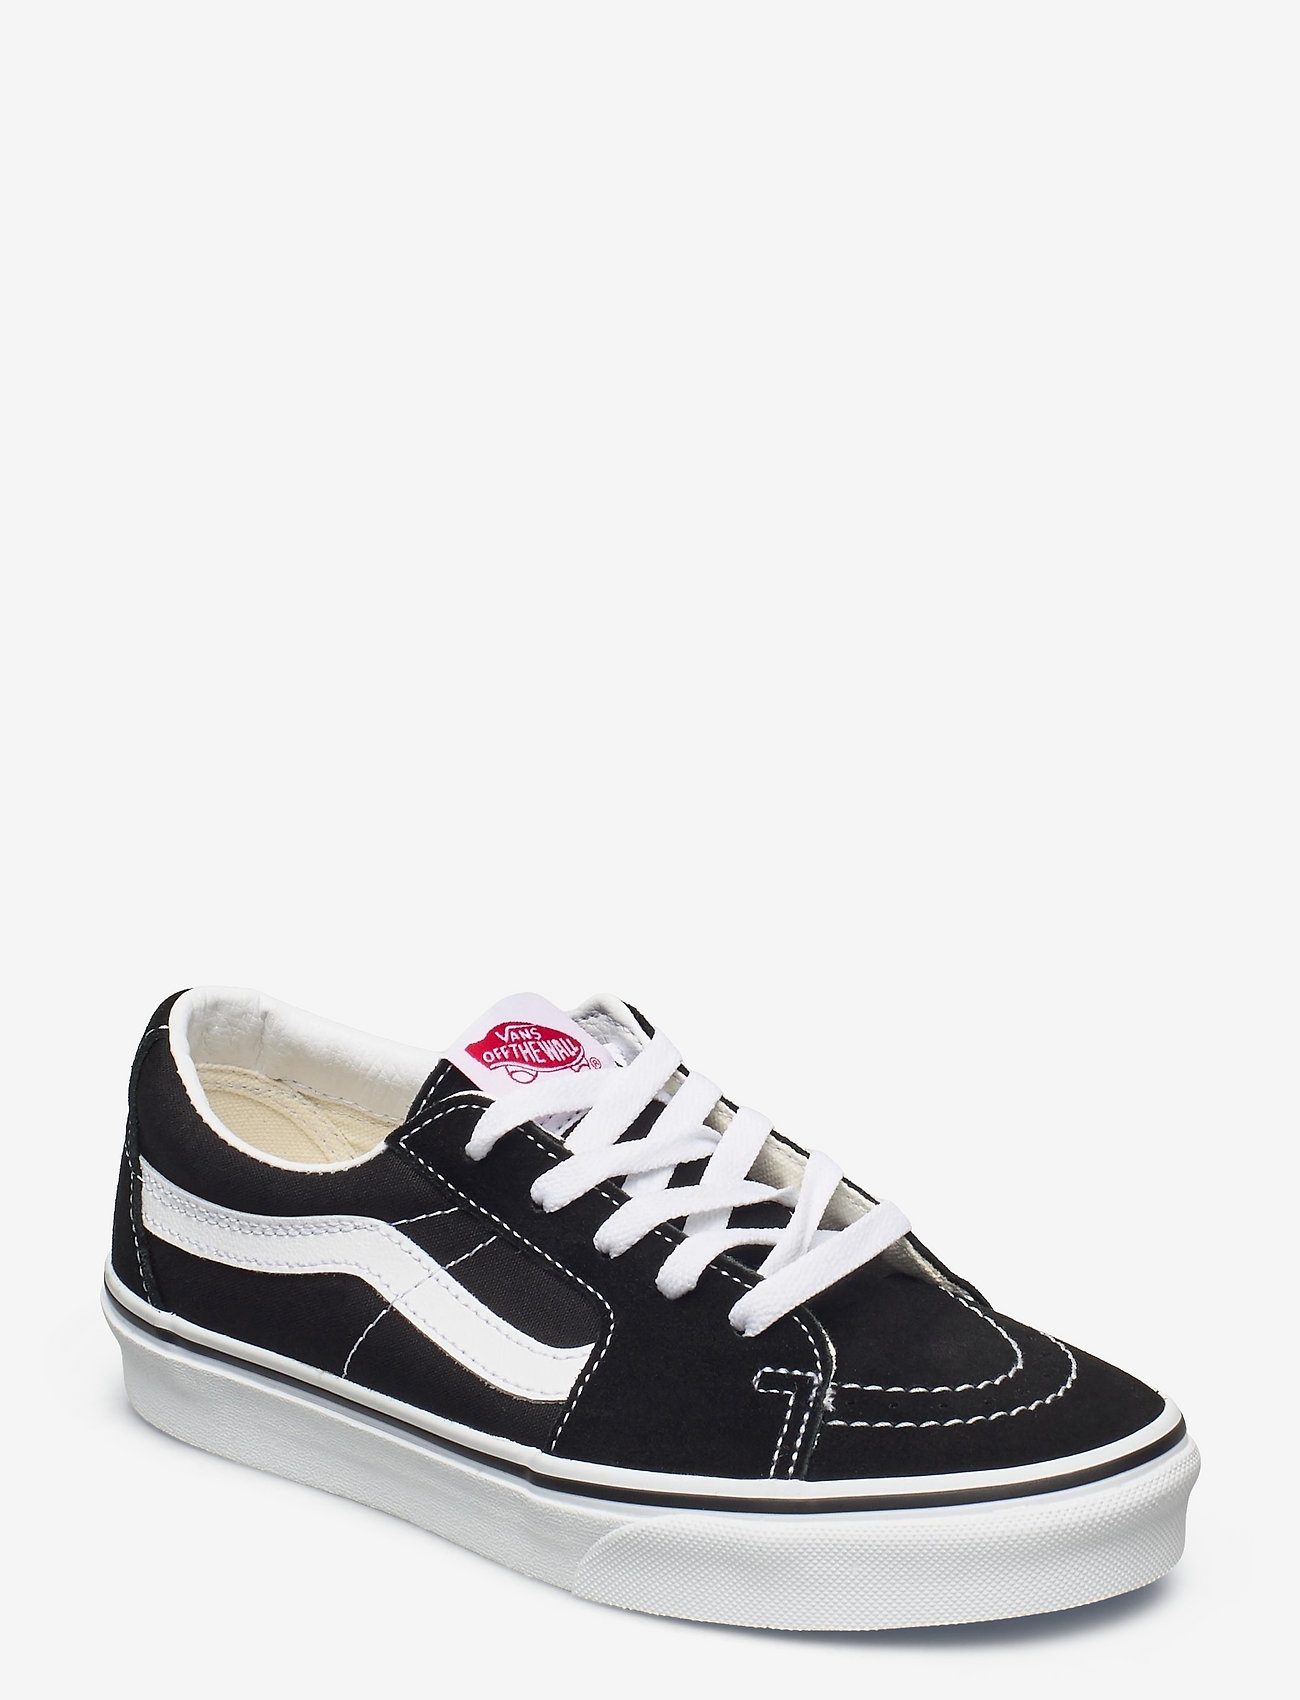 VANS - UA SK8-Low - lage sneakers - black/true white - 0